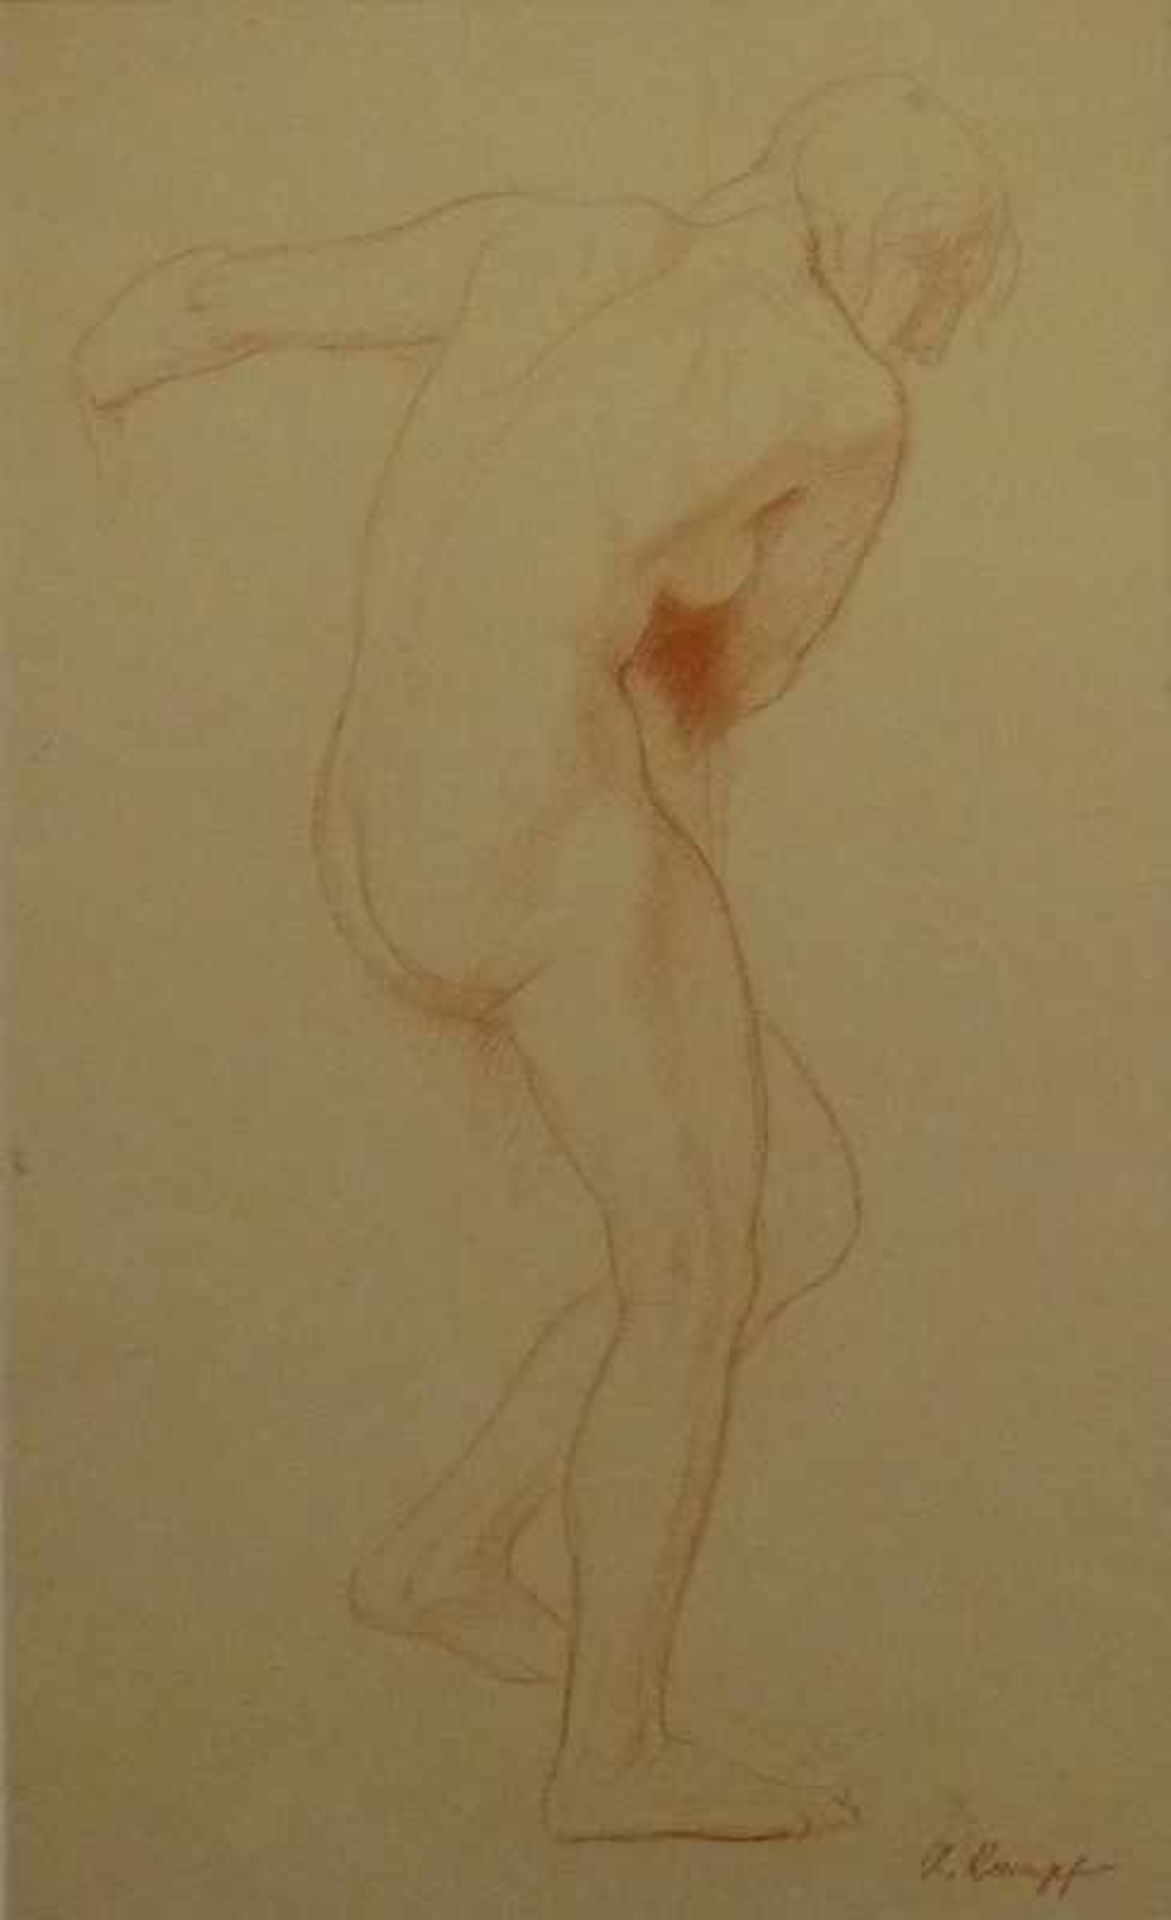 Aktstudie, Arthur Kampf (1864-1950) Rötel-Zeichnung, sign., seitliche Rückenansicht einergedreht